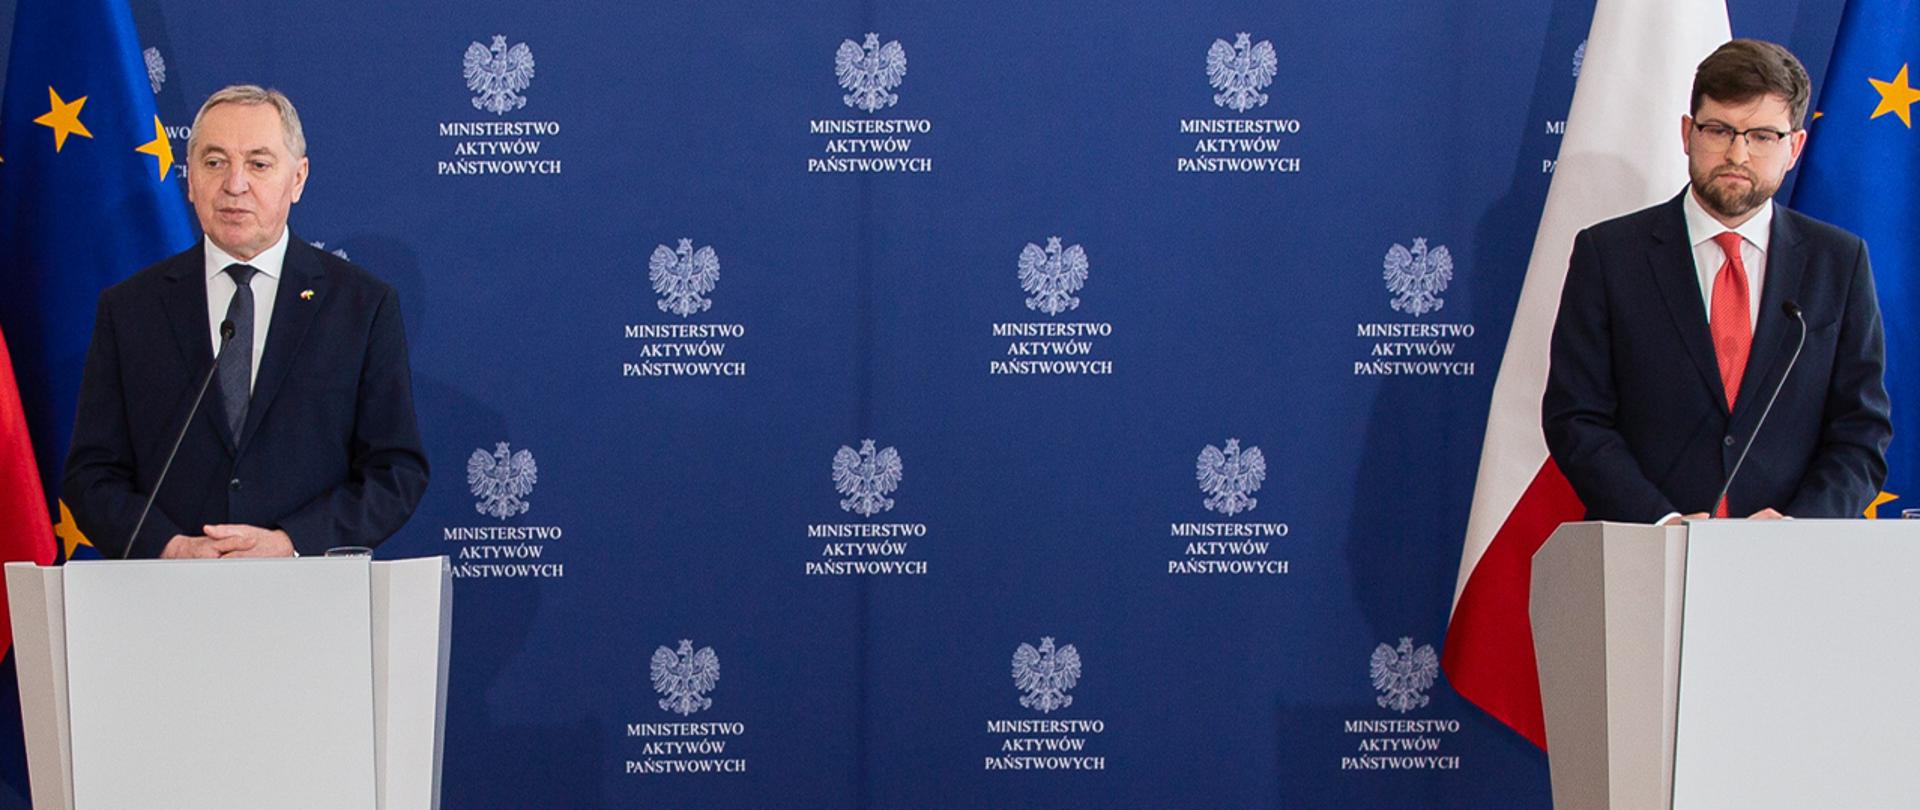 Wicepremier Henryk Kowalczyk i wiceminister Andrzej Śliwka stoją przy mównicach. W tle ścianka z logotypami MAP i flagi.